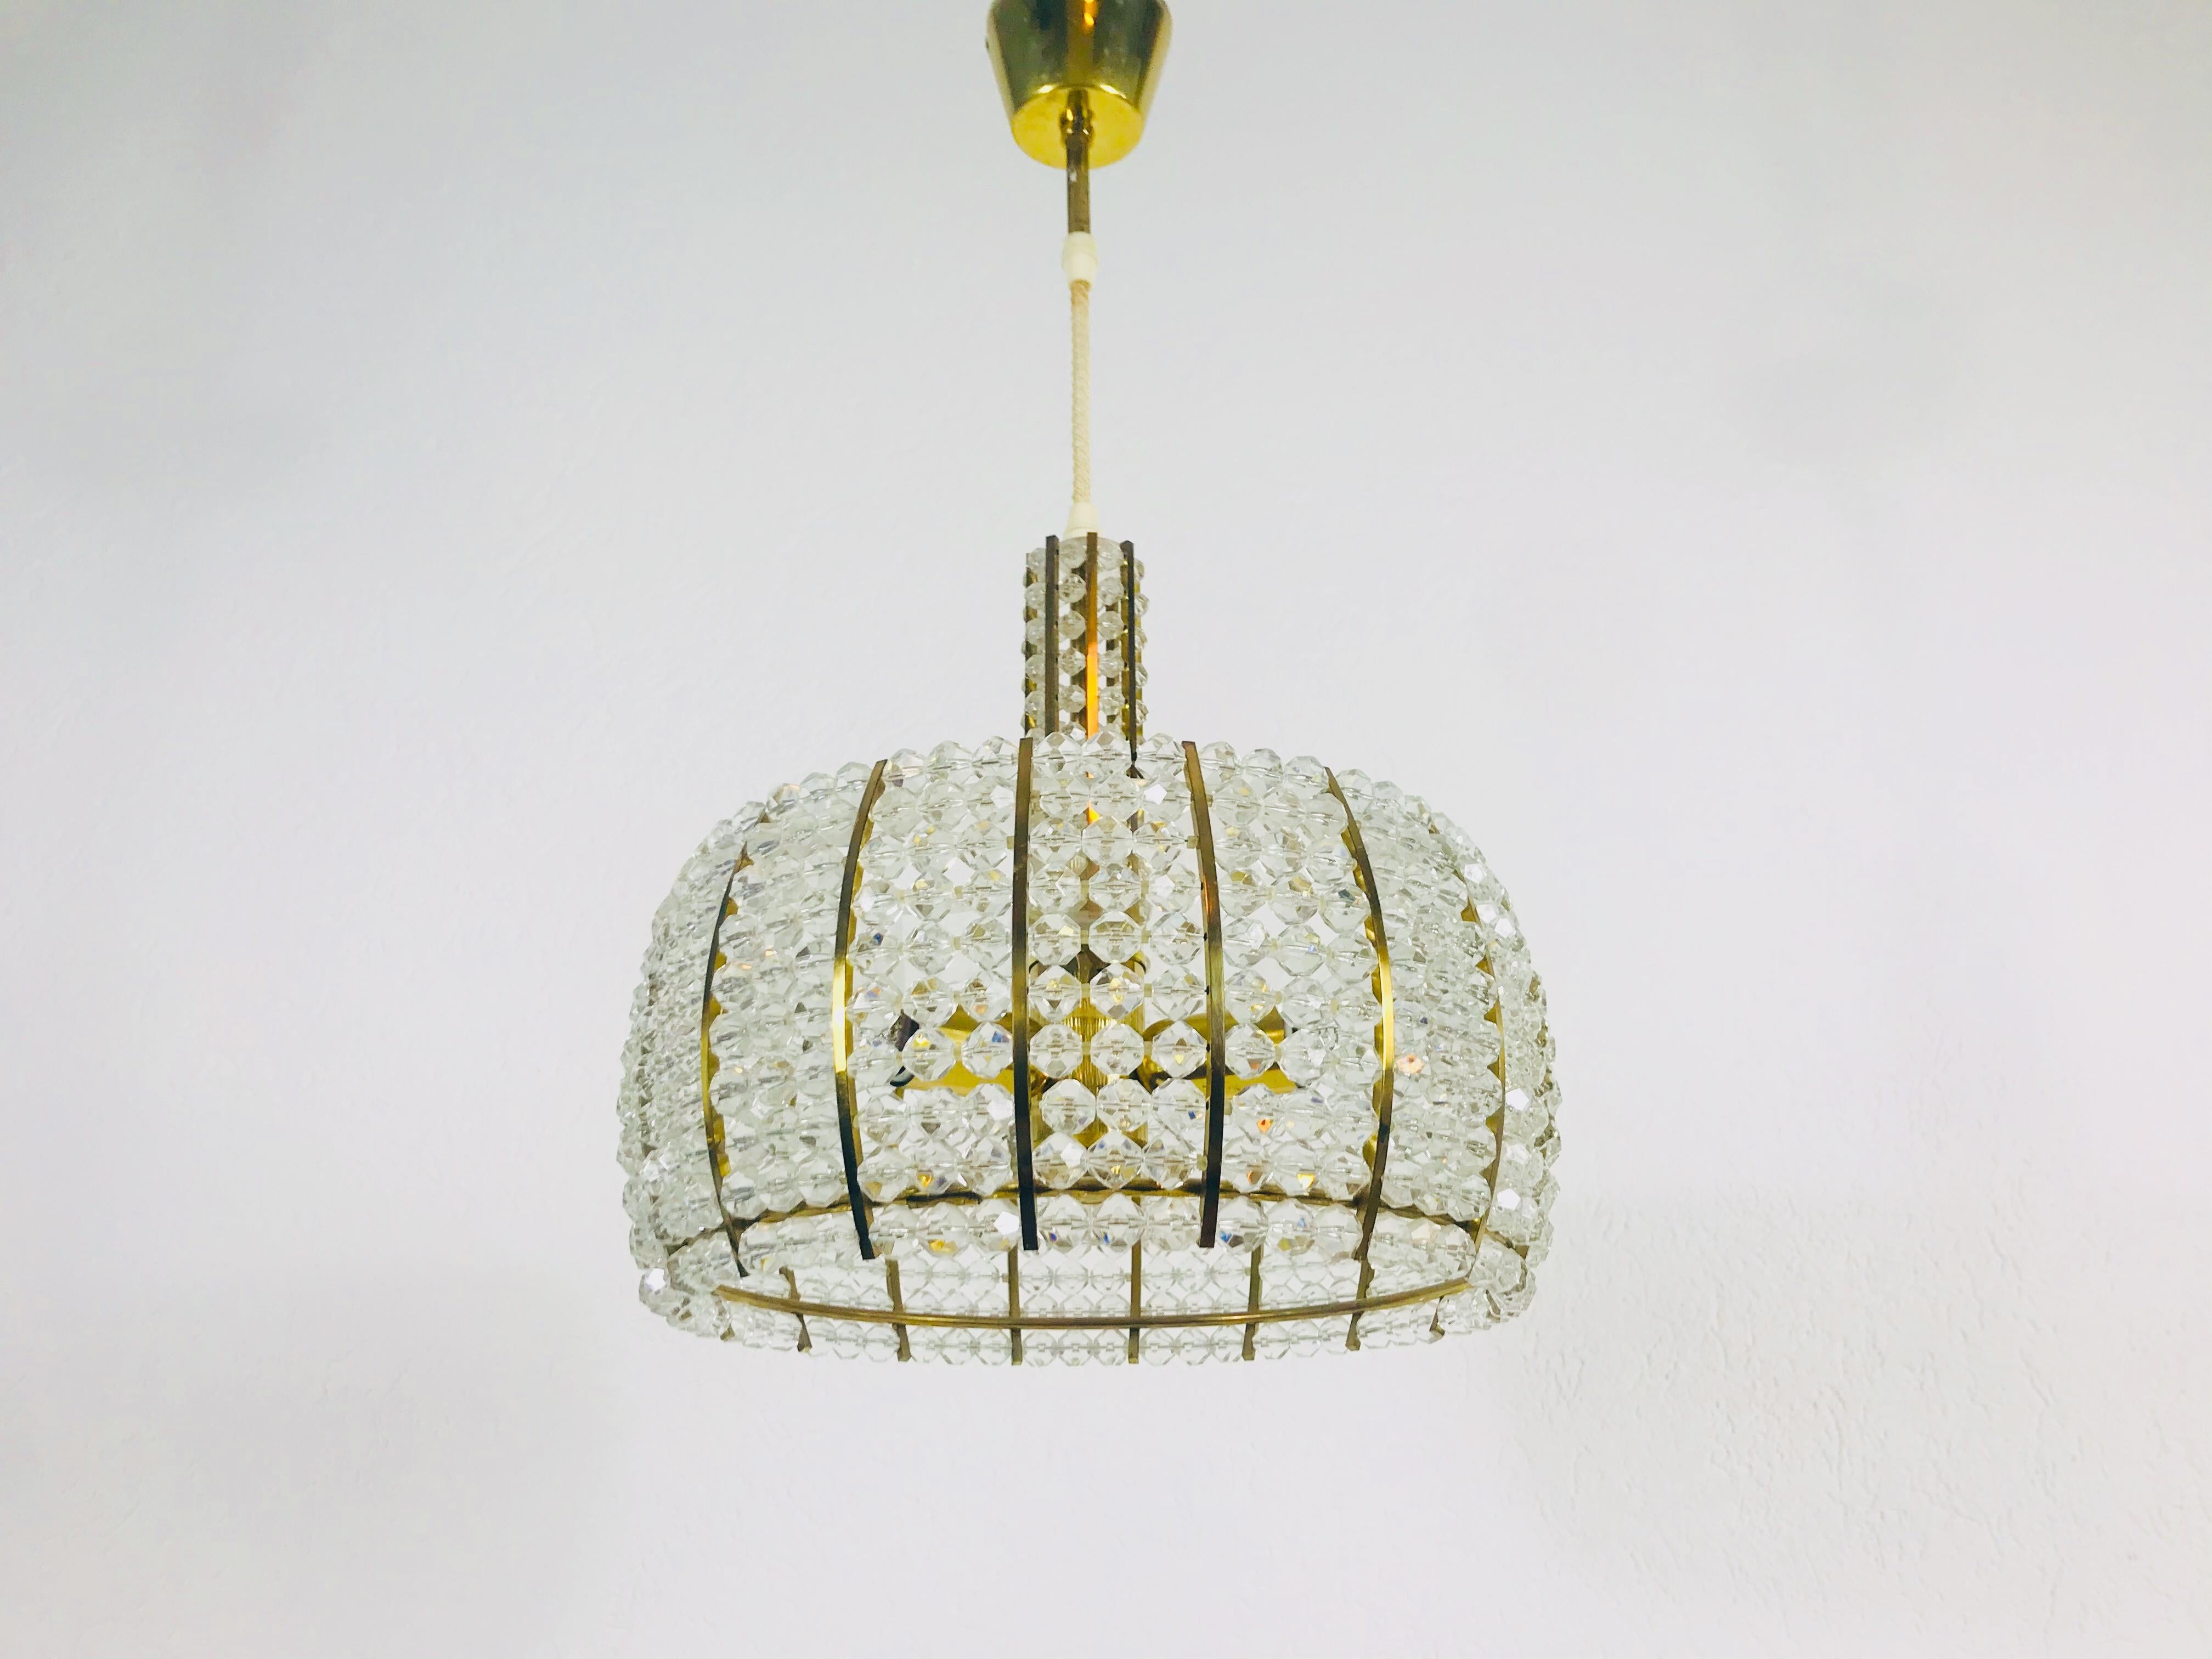 Un lustre en laiton réalisé par Emil Stejnar pour Rupert Nikoll, en Autriche, dans les années 1960. L'éclairage a un design midcentury étonnant. Elle est faite de laiton et de petits verres et s'intègre parfaitement dans un salon. Le luminaire